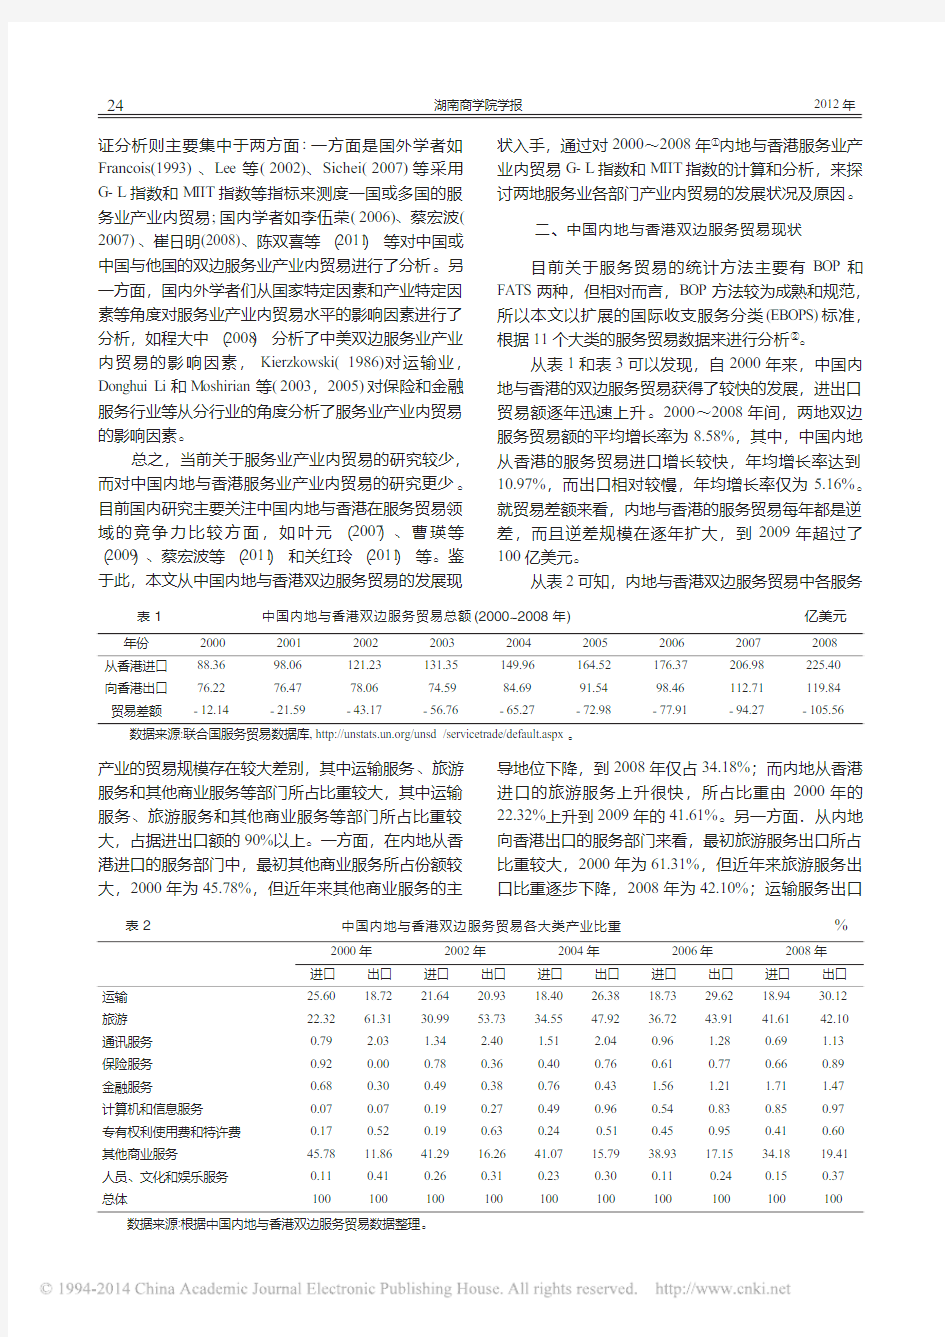 中国内地与香港服务业产业内贸易的实证研究